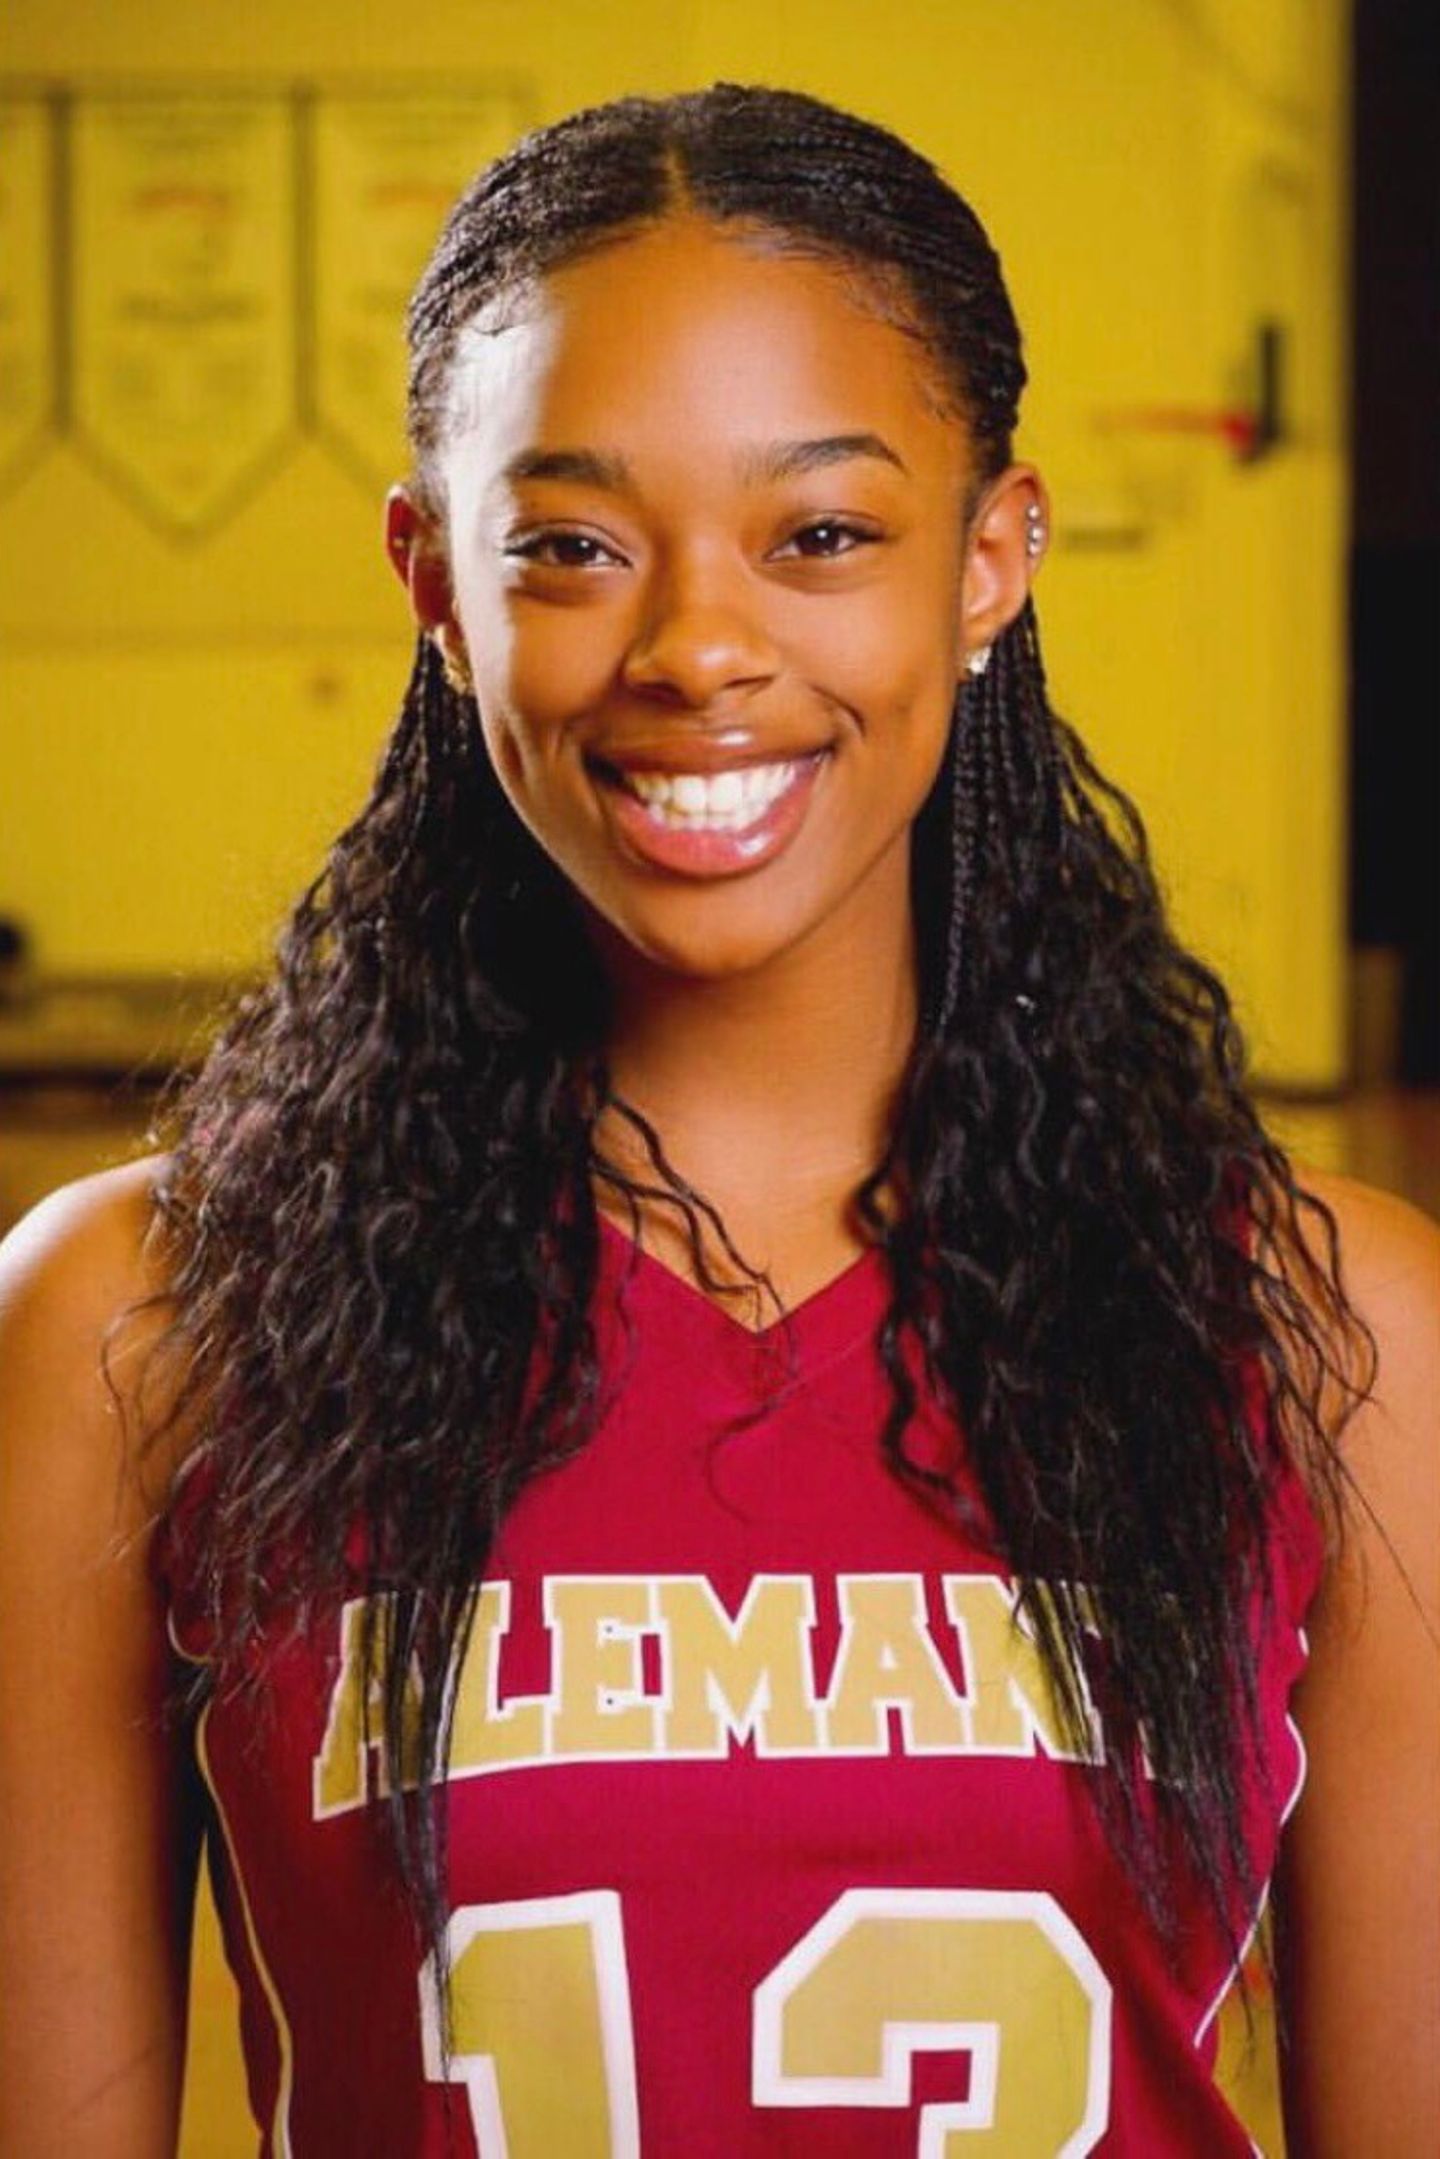 Dieses sportliche Mädchen ist die Tochter von Rap-Legende Busta Rhymes. Die damals 14-jährige Cacie Smith gilt in ihrer Jugend als Basketballtalent und macht ihren berühmten Vater schon 2013 mächtig stolz. 